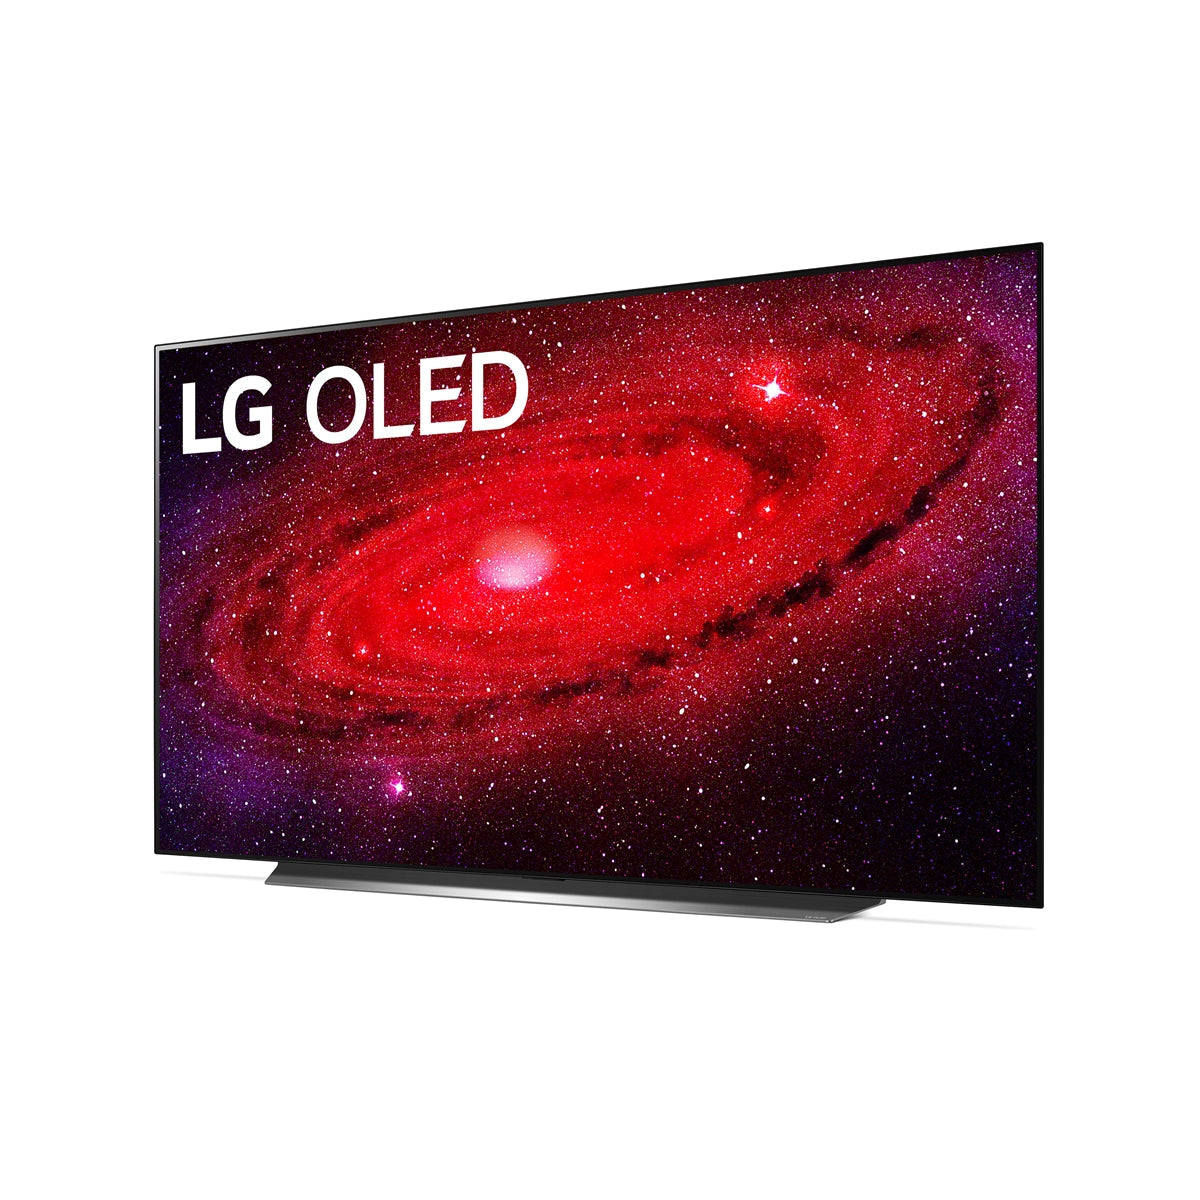 LG OLED77CXPUA 77" Class HDR 4K UHD Smart OLED TV